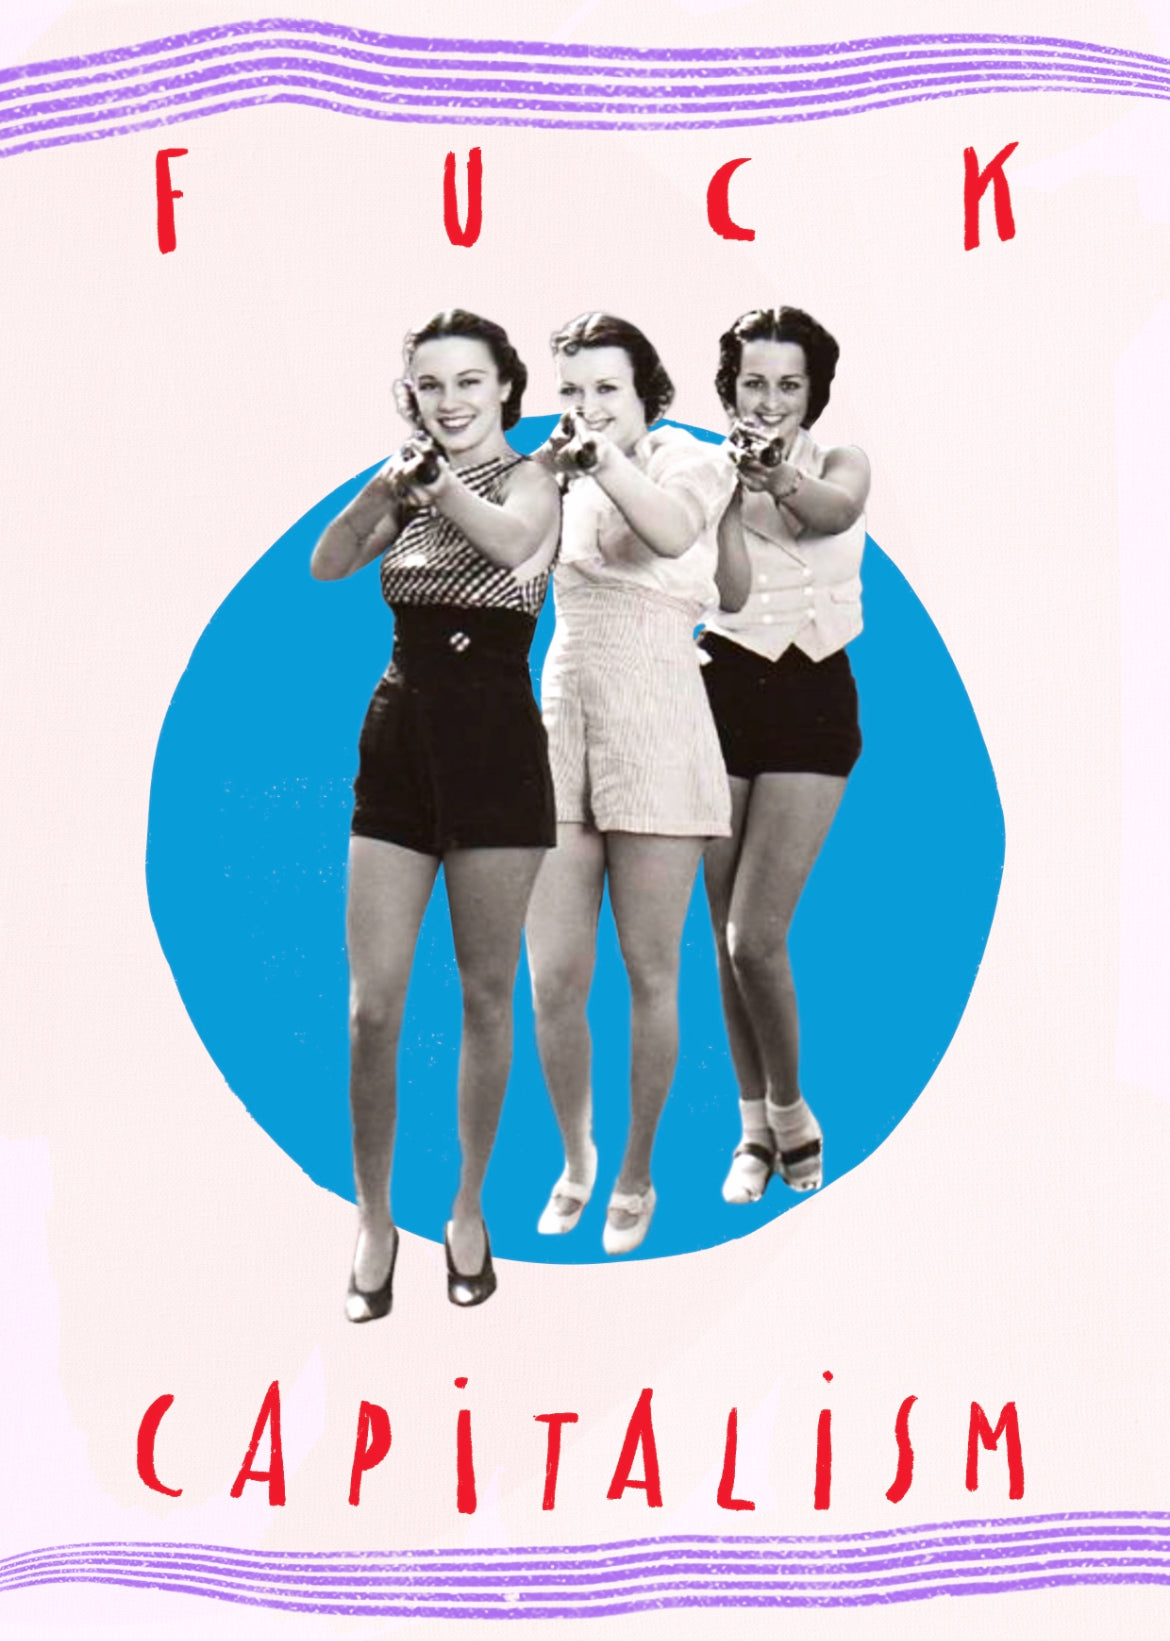 Lot de cartes postales collages féministes haute qualité vernis 3D